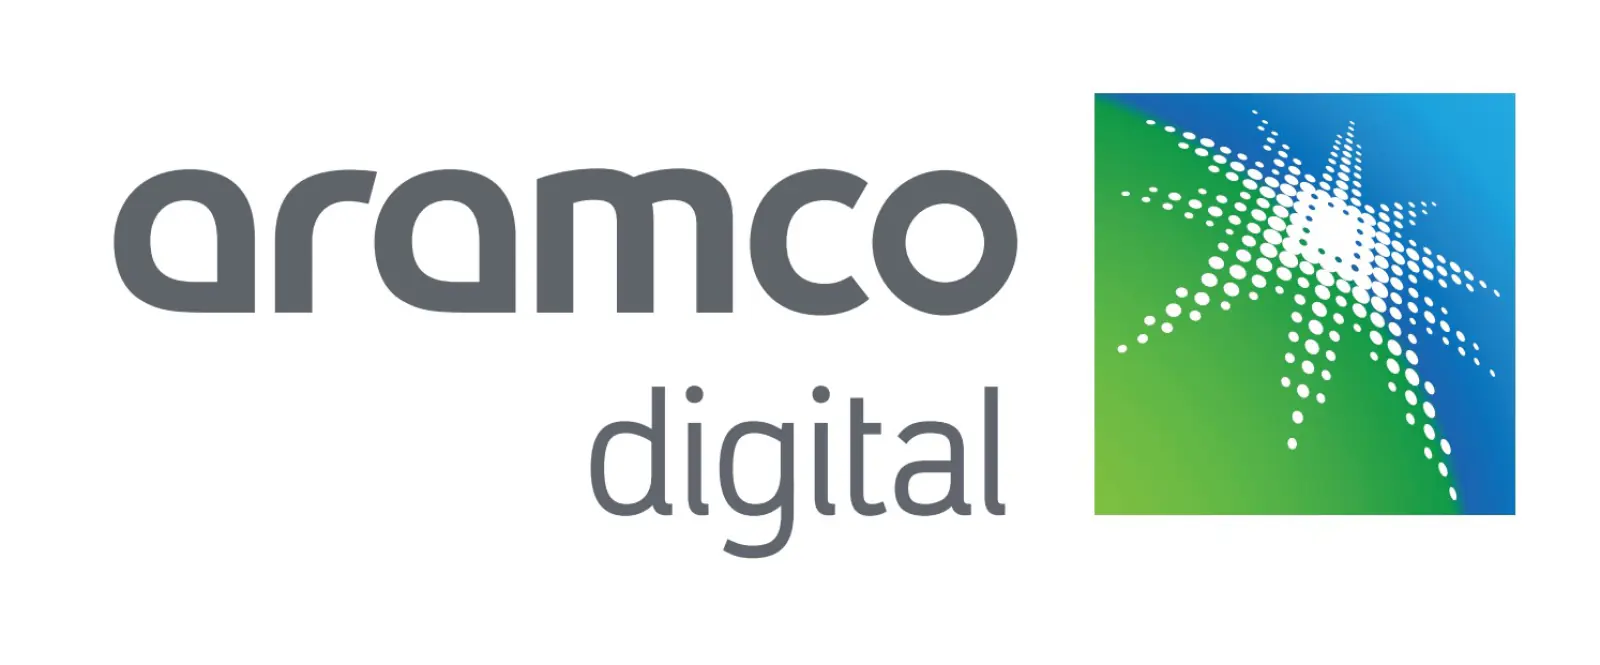 सऊदी अरब में Open RAN के विकास और इस्तेमाल को बढ़ावा देने के लिए Aramco Digital और Intel ने हाथ मिलाया